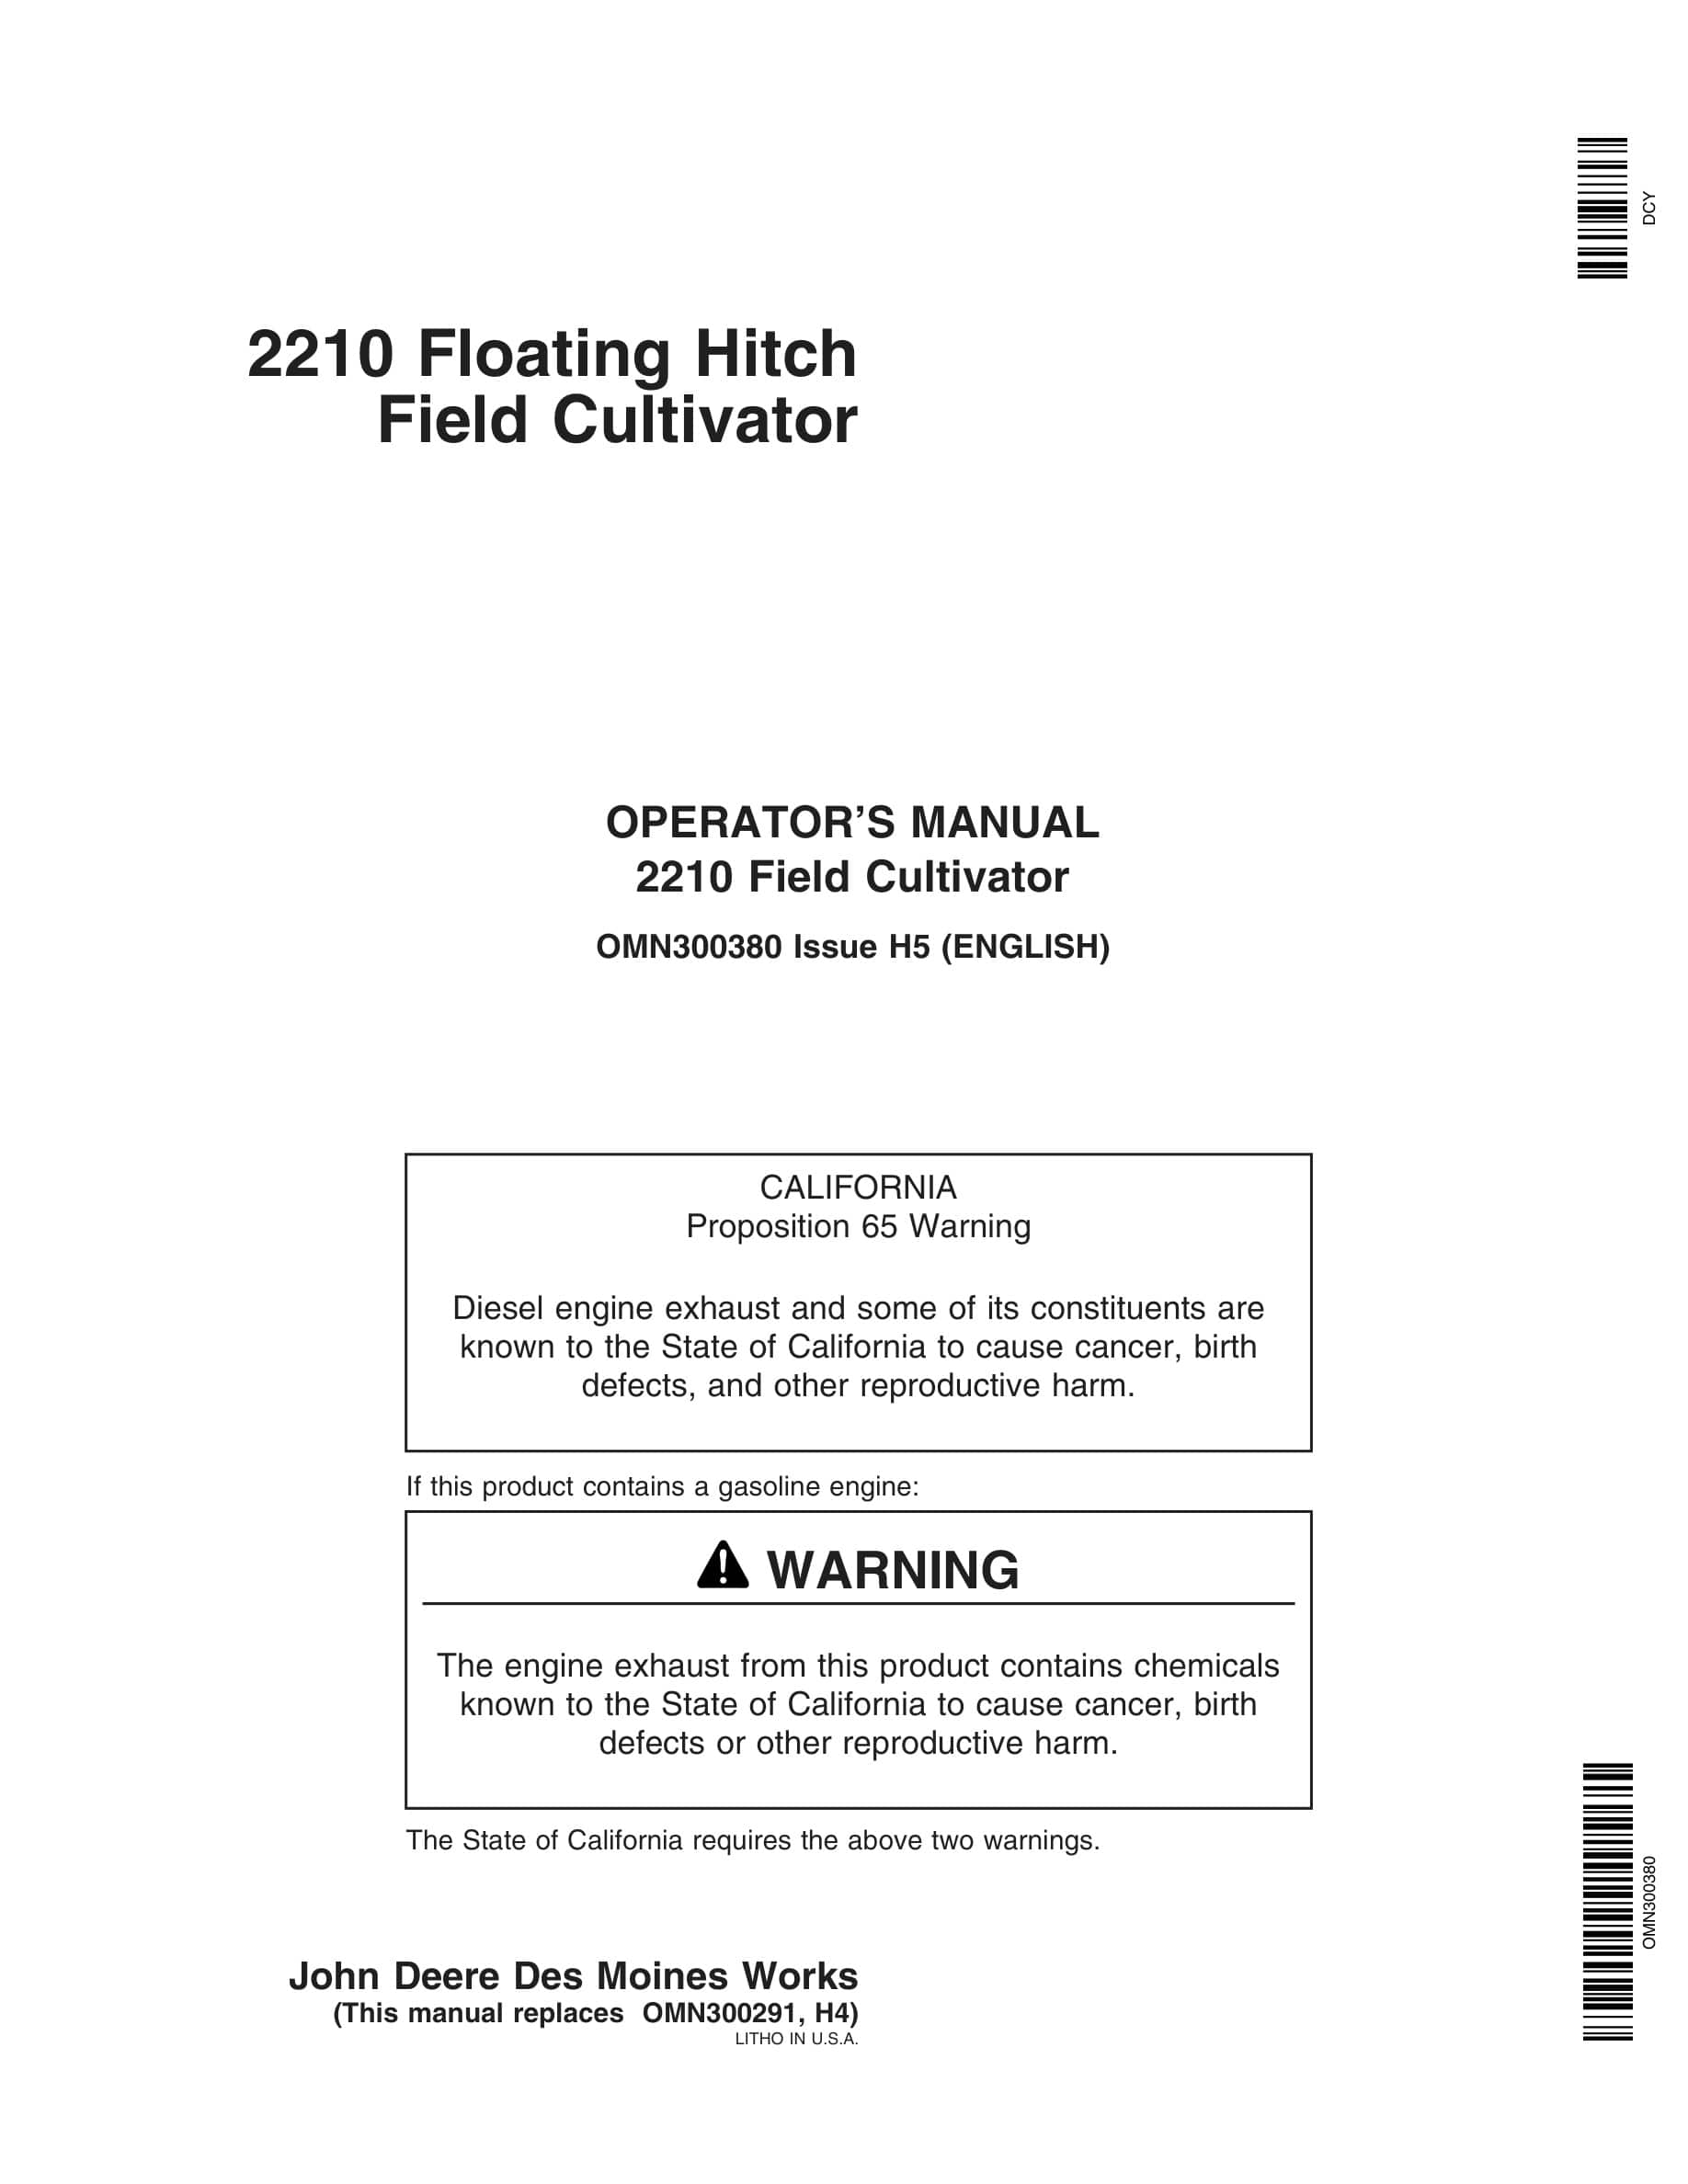 John Deere 2210 Floating Hitch Field Cultivator Operator Manual OMN300380-1